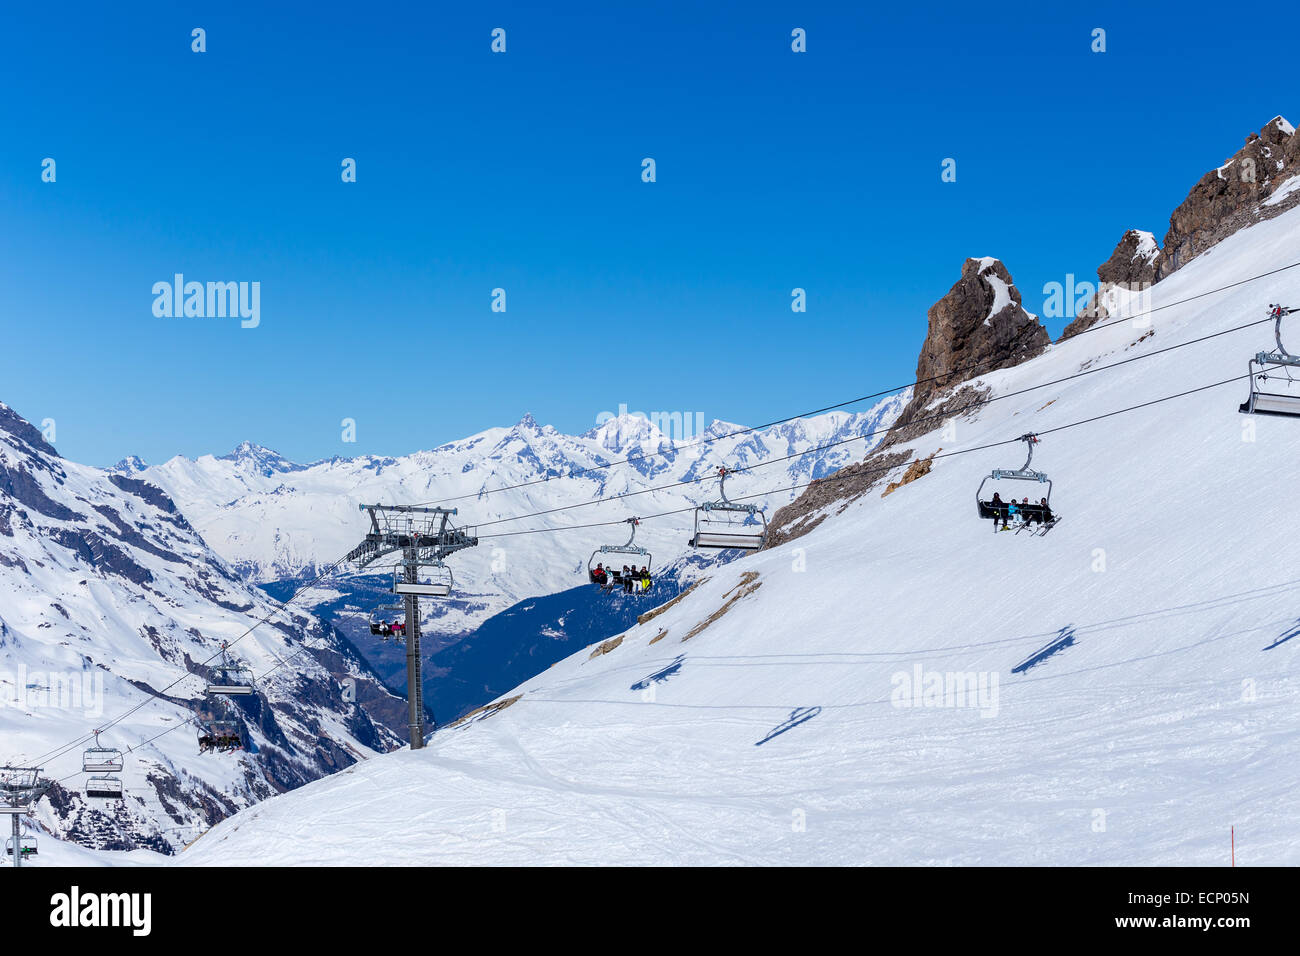 Sur un télésiège ski resort. Tignes, France Banque D'Images